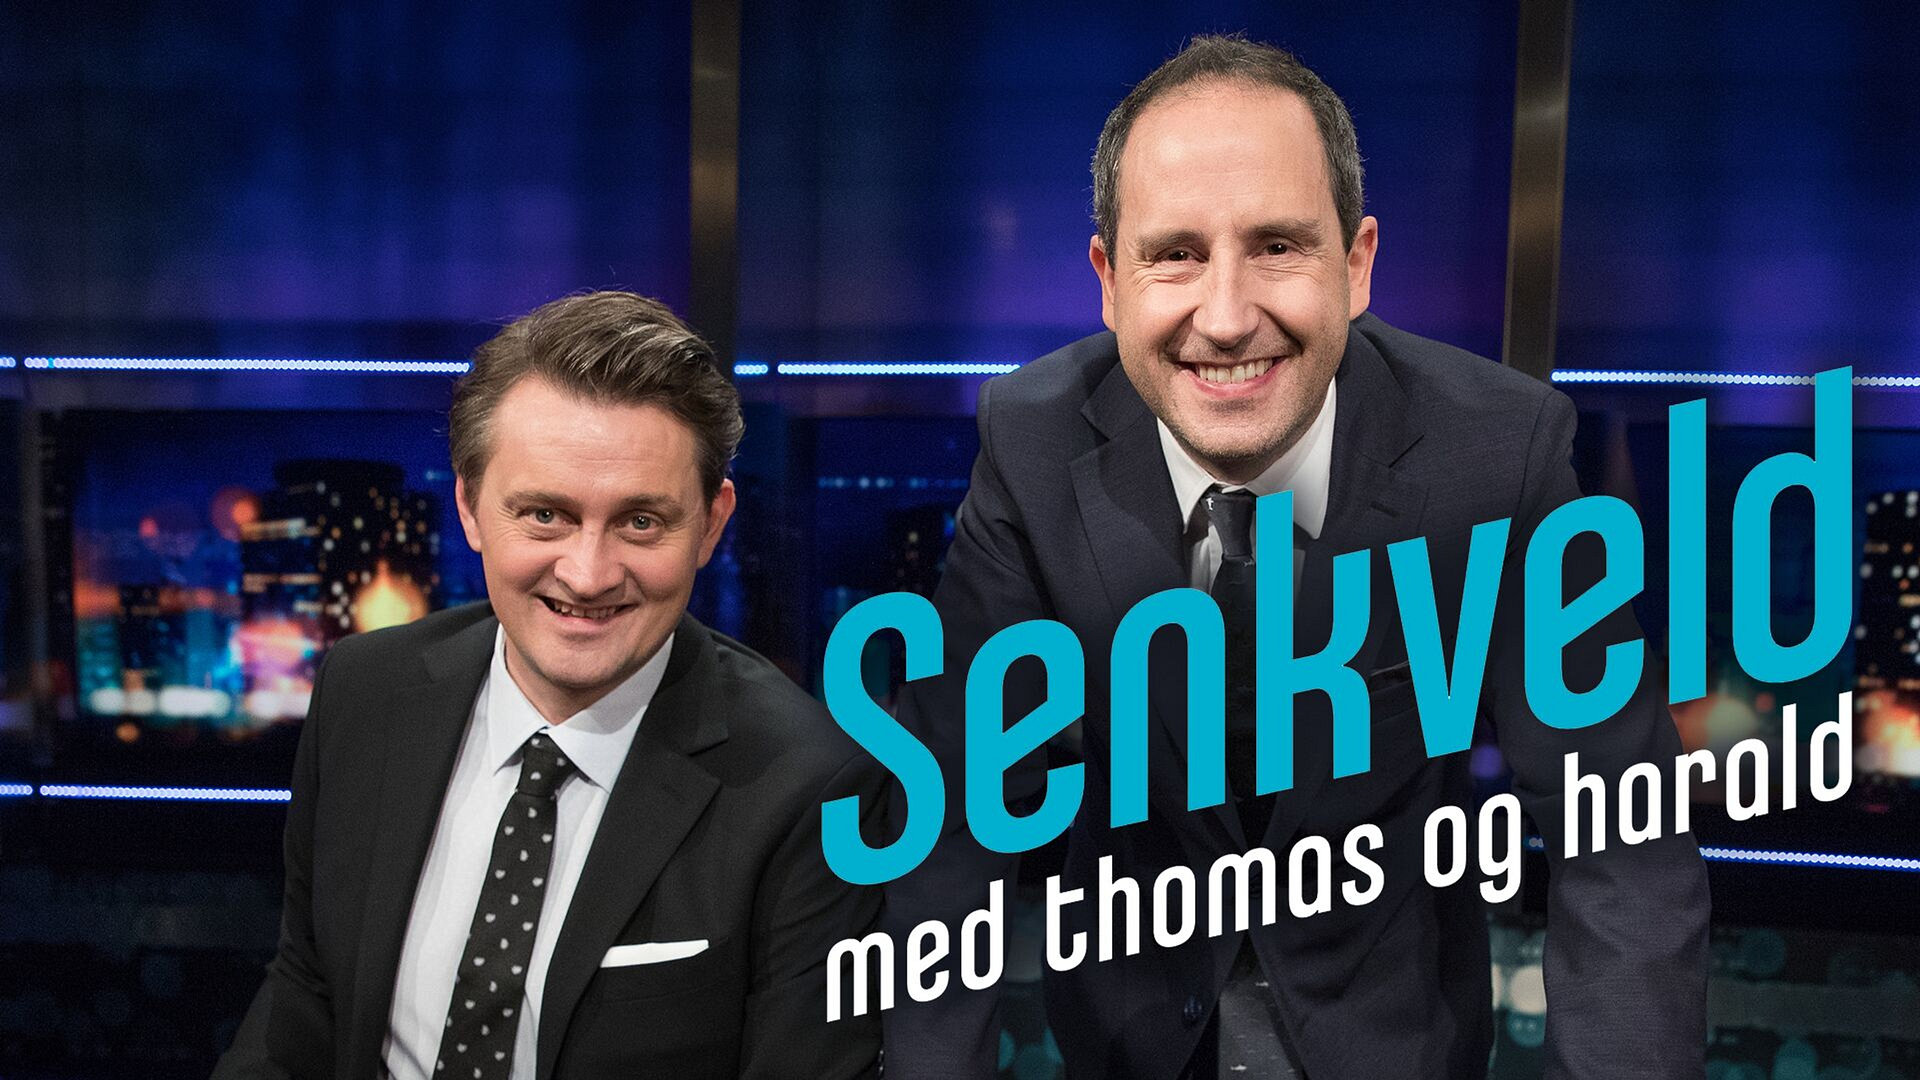 Senkveld med Thomas og Harald (24) - episode 3